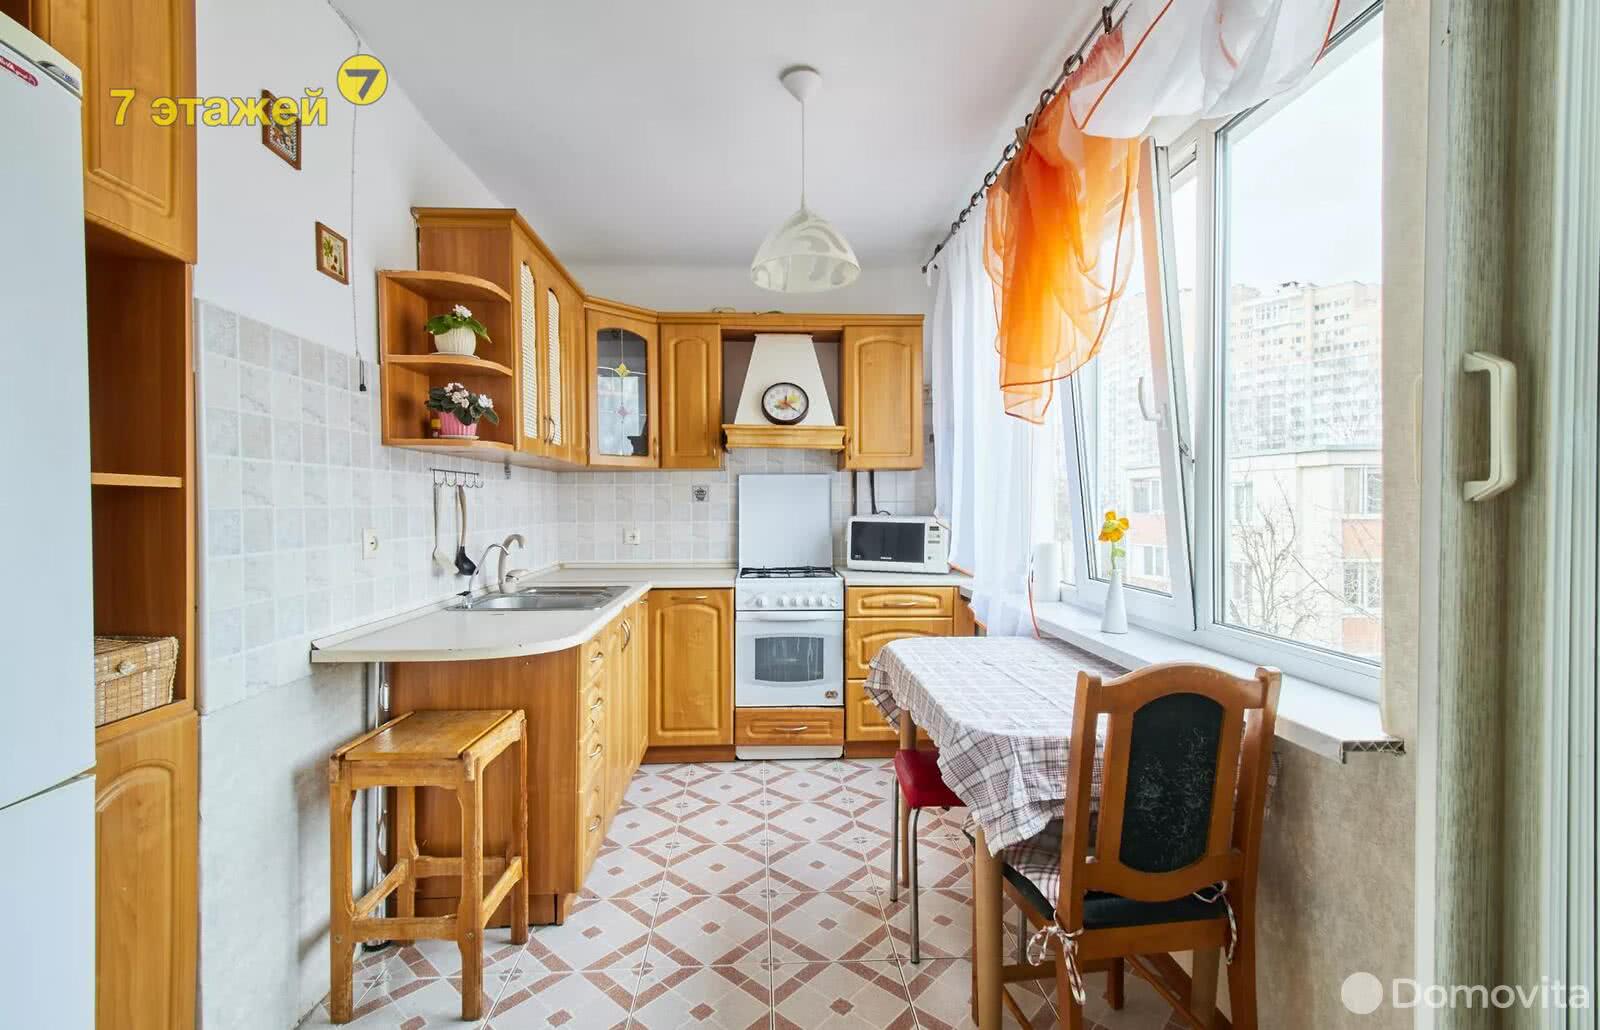 Стоимость продажи квартиры, Минск, ул. Янки Мавра, д. 42